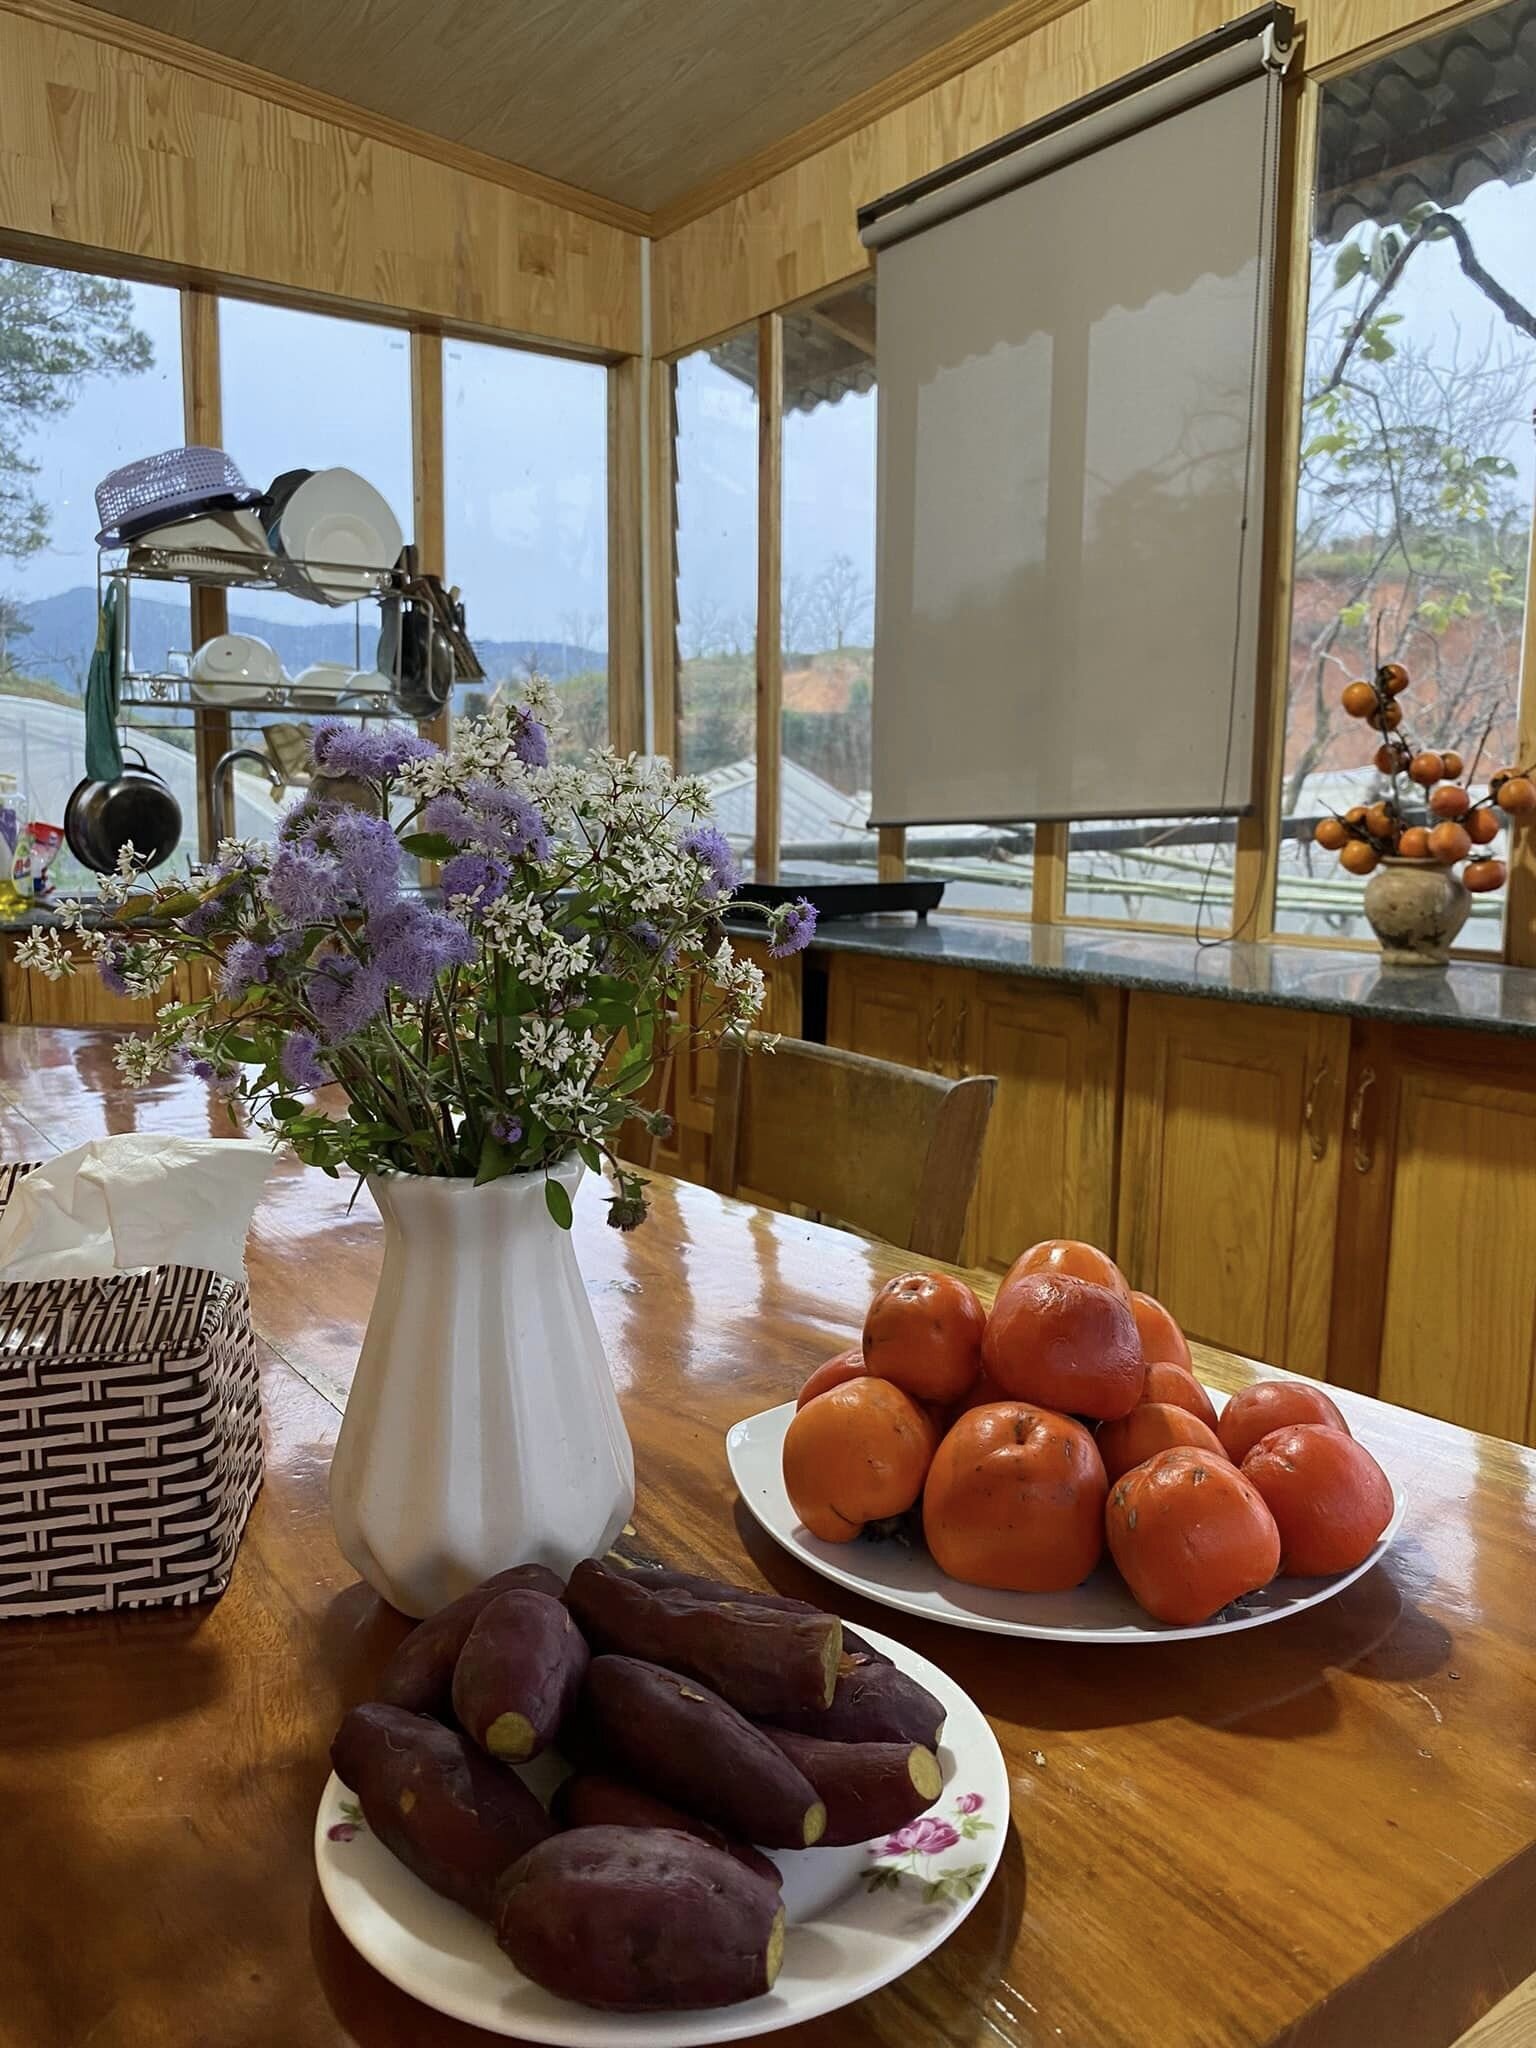 Căn bếp với không gian mở hoàn toàn, chủ nhân có thể vừa làm bếp, vừa nhìn ngắm vườn.